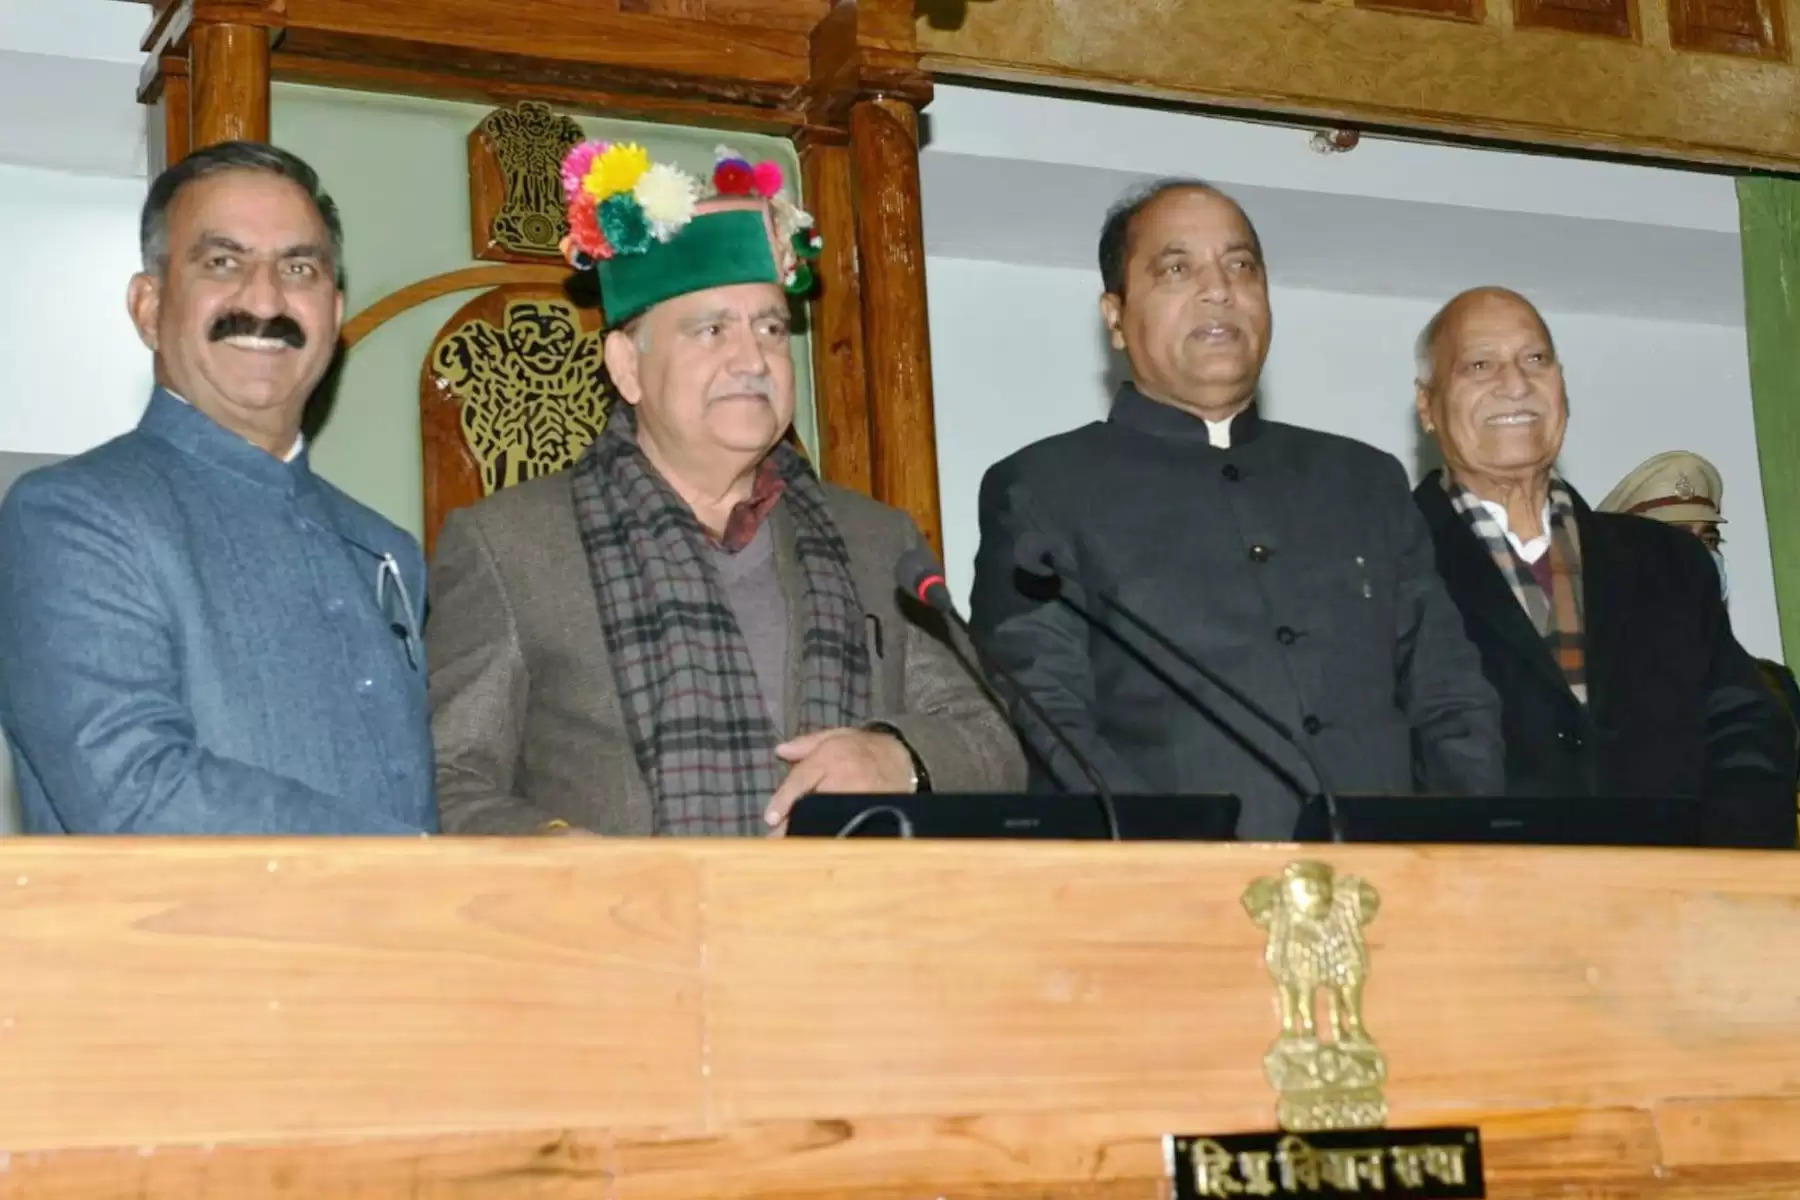 Kuldeep Pathania Set To Become Speaker Of Himachal Vidhansabha चम्बा जिले के भटियात विधानसभा क्षेत्र से विधायक कुलदीप सिंह पठानिया ने अध्यक्ष (Speaker Of Himachal Vidhansabha) पद संभाल लिया। कुलदीप सिंह पठानिया ने 1985 में 28 साल की उम्र में अपना पहला चुनाव जीता था। इसके बाद साल 1993 और 2003 में आजाद प्रत्याशी के तौर पर विधानसभा चुनाव में जीते। साल 2007 में कुलदीप सिंह पठानिया को कांग्रेस पार्टी ने एक बार और मौका दिया और पठानिया फिर जीतकर विधानसभा पहुंचे। कुलदीप सिंह पठानिया 2003 से 2007 तक फाइनेंस कमिशन के चेयरमैन भी रह चुके हैं।